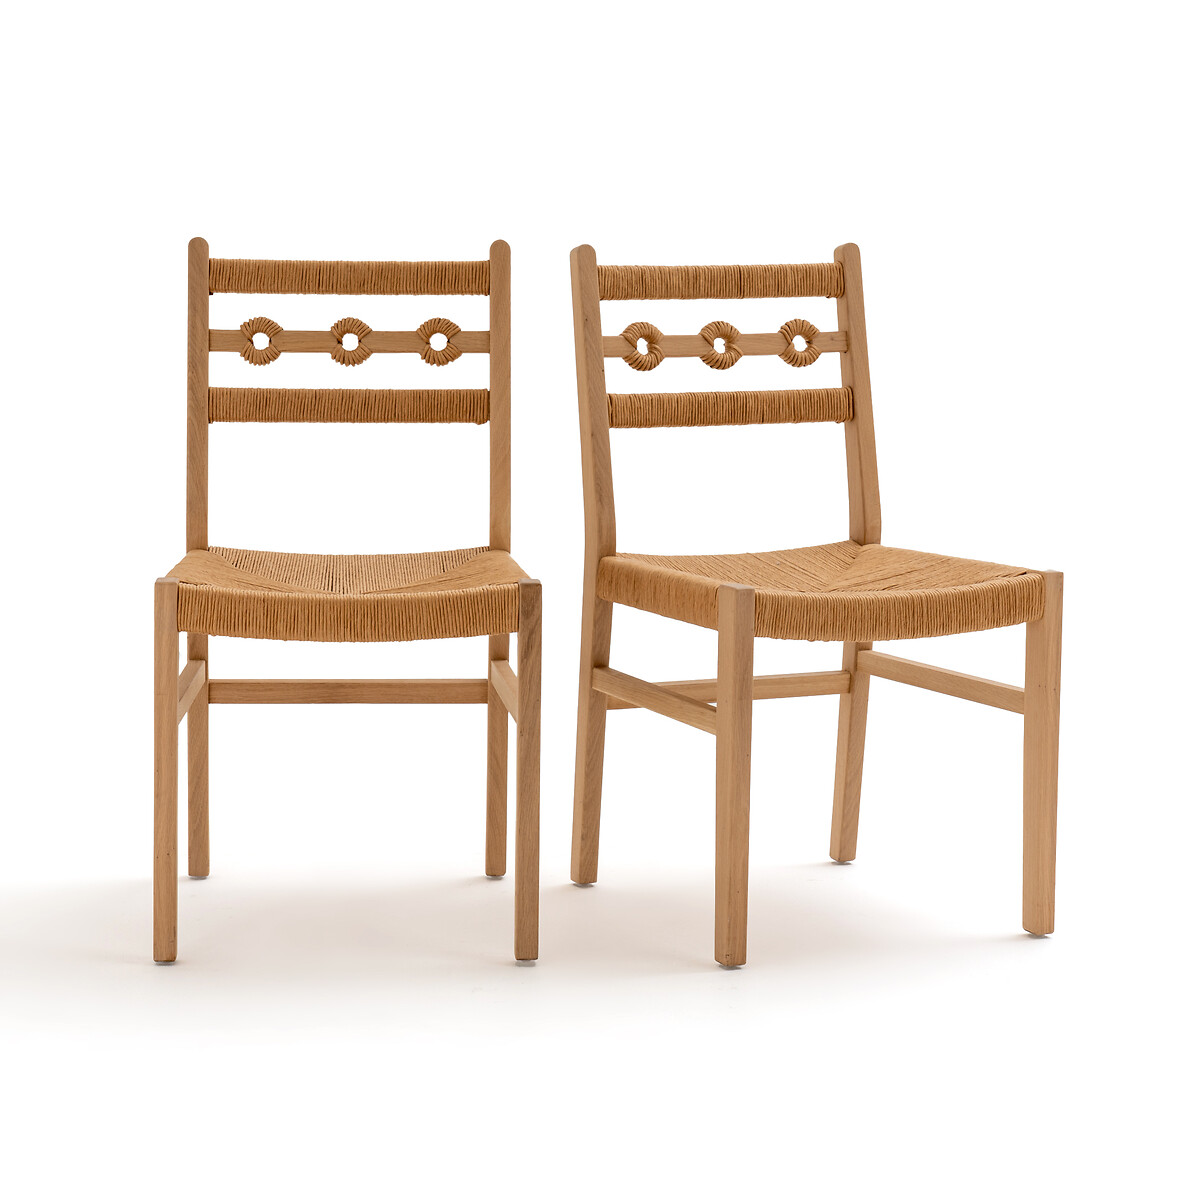 Комплект из стульев из дуба и плетеного материала Menorca единый размер каштановый комплект из двух журнальных столов из металла и плетеного материала rosali единый размер черный